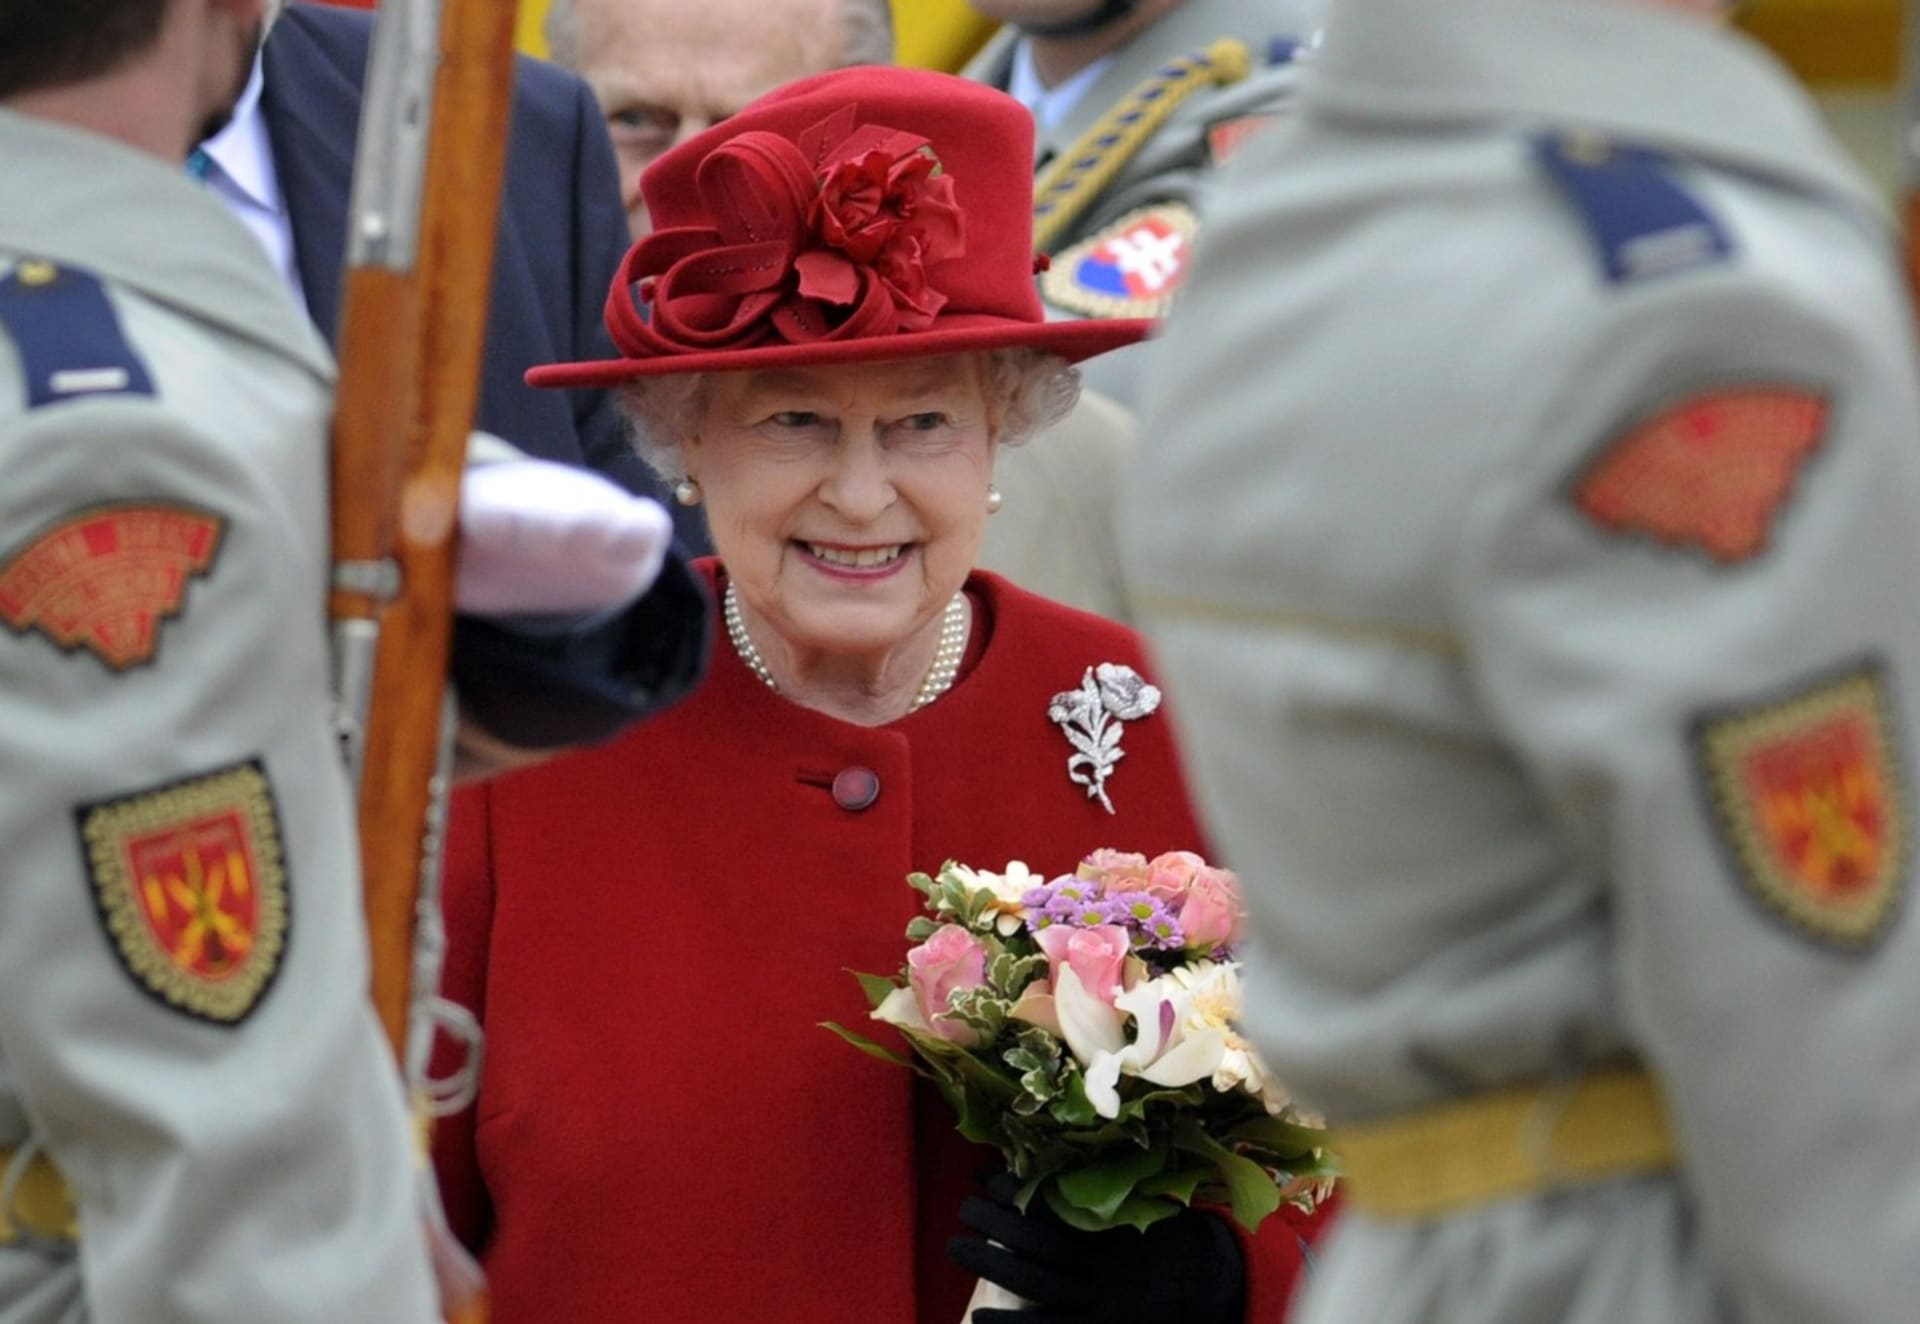 Britská královna Alžběta II. vládne už bezmála sedmdesát let.